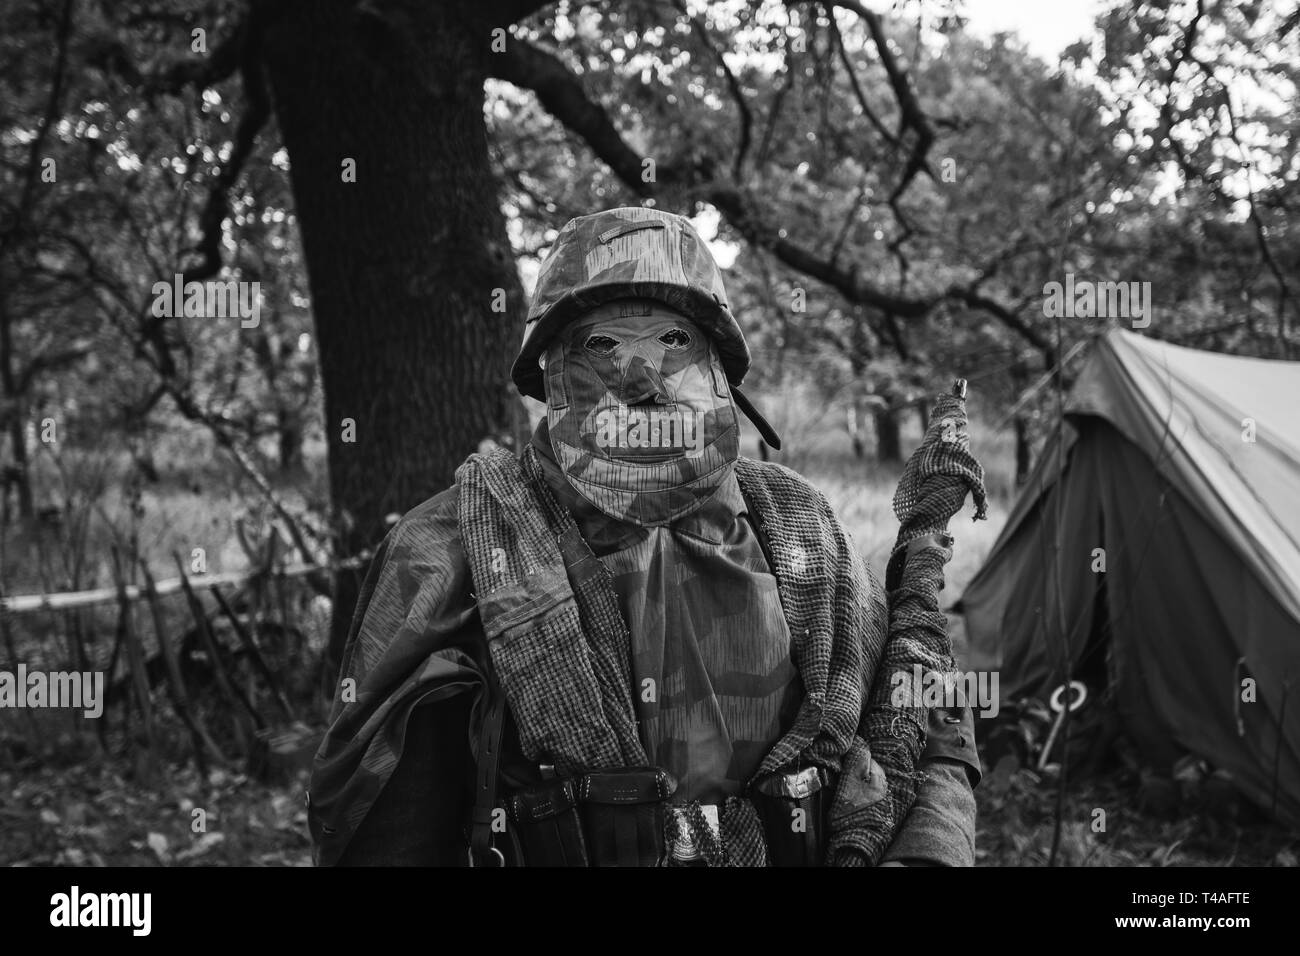 La reconstitution médiévale caché habillé comme la Seconde Guerre mondiale, Soldat Wehrmacht Sniper en forêt. Fermer Portrait en camouflage. Photo en noir et blanc. Banque D'Images